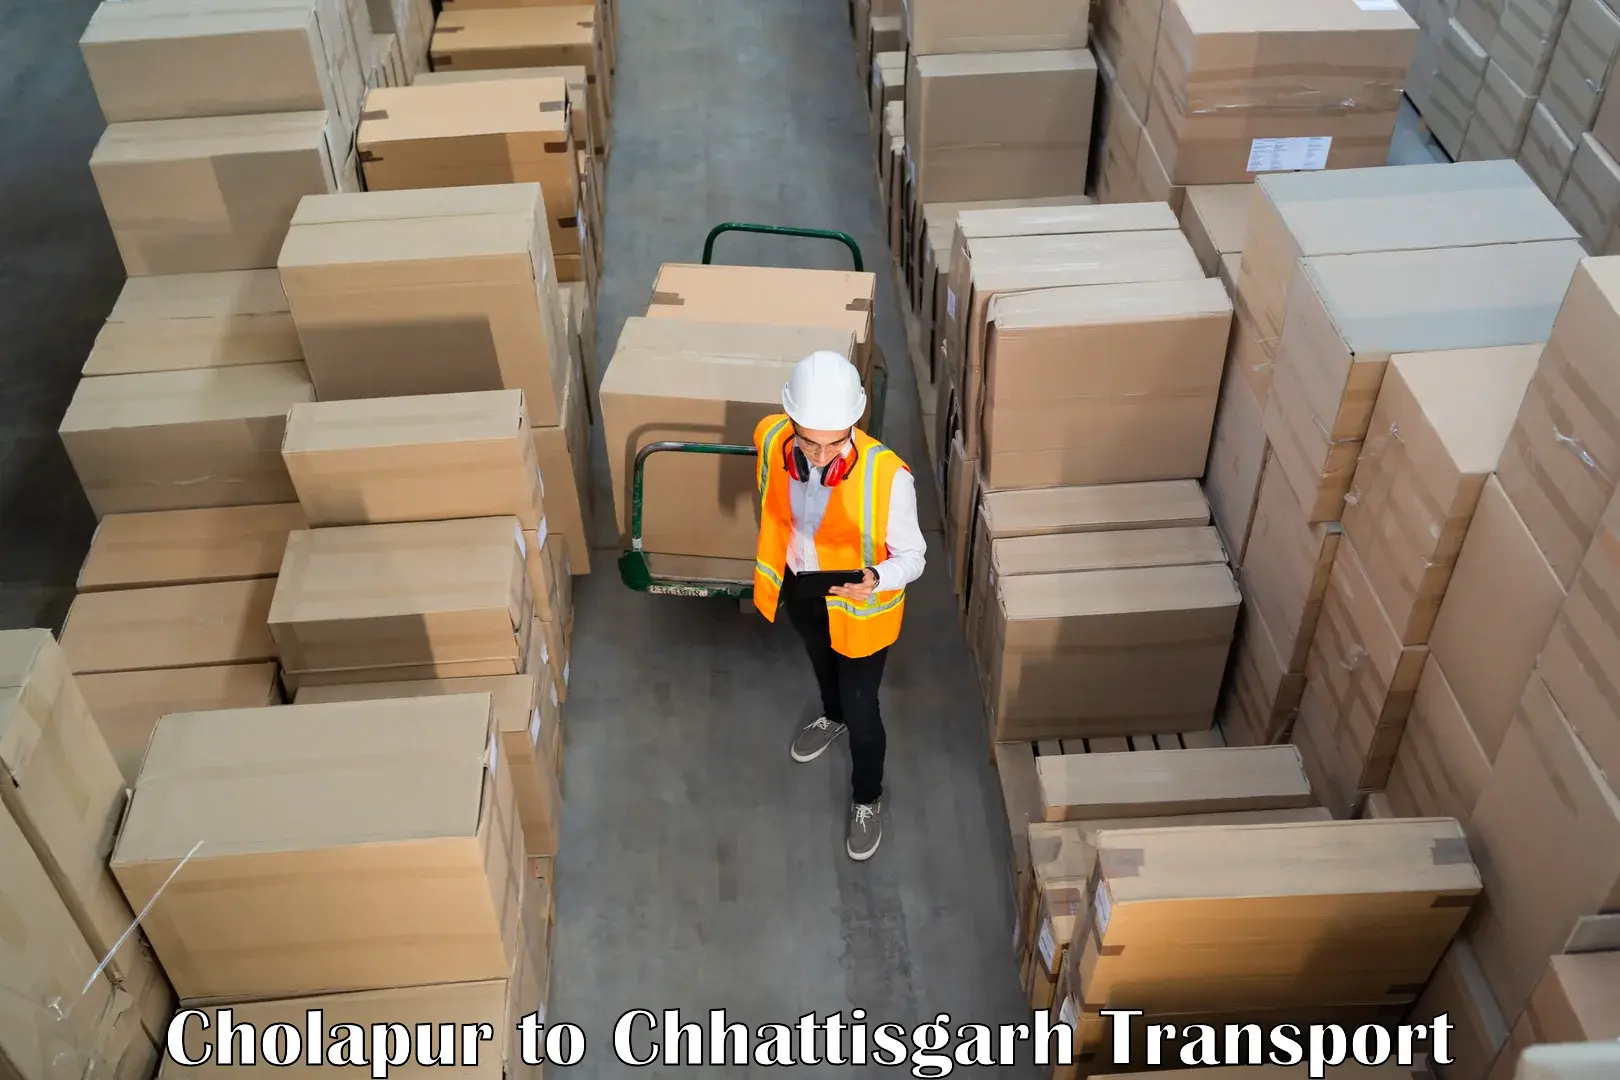 Commercial transport service Cholapur to Jashpur Nagar